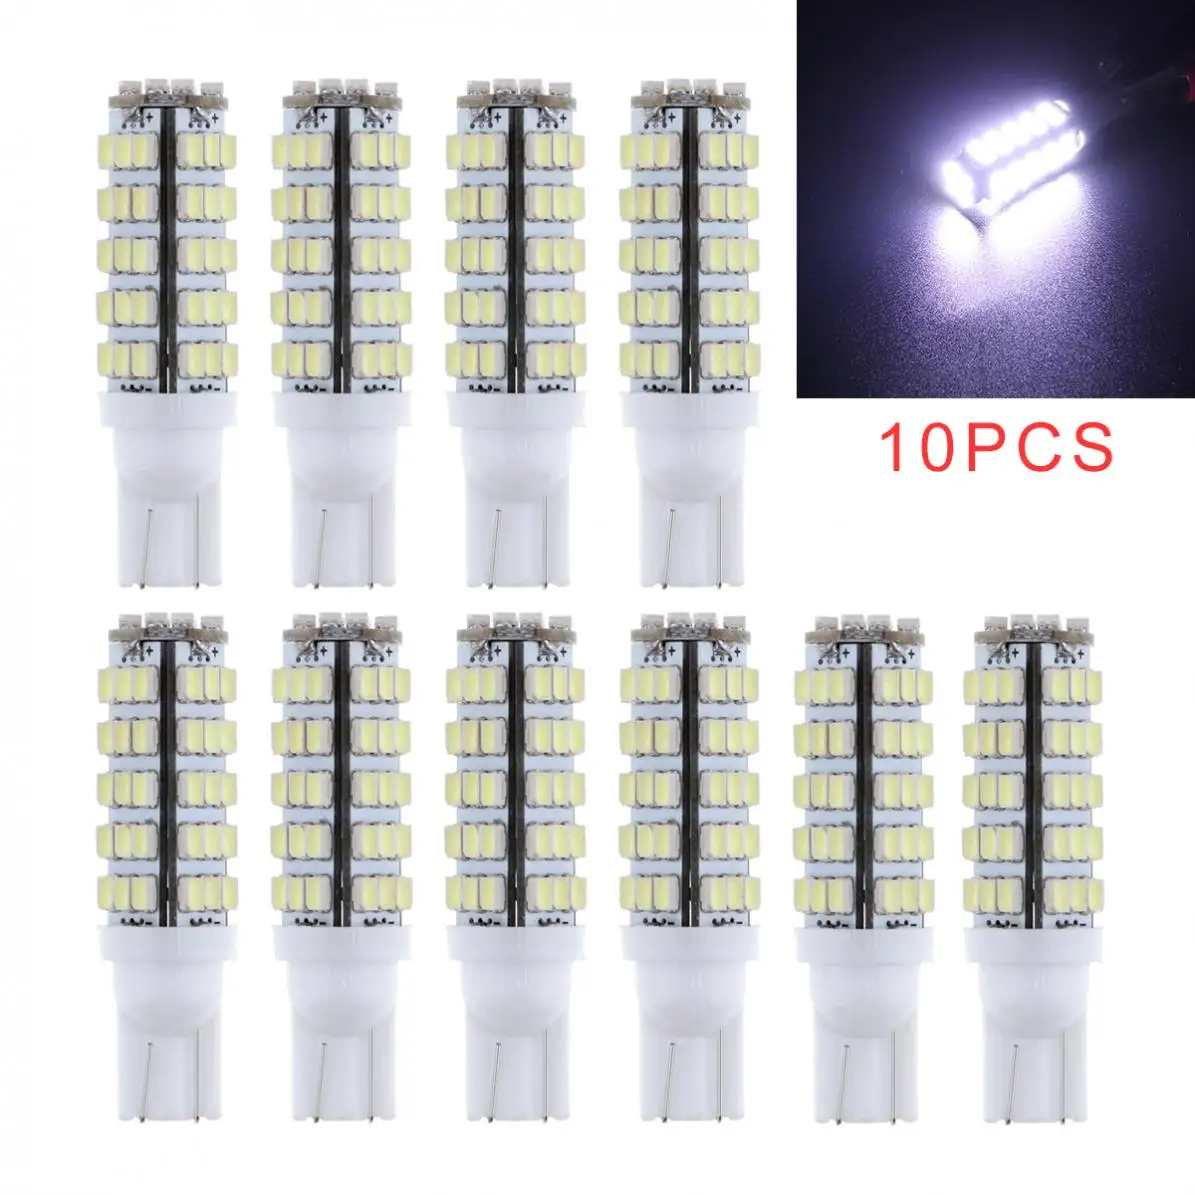 

10pcs Super Bright White T10 68-SMD LED W5W 194 906 168 Car Reverse Backup Light Bulbs Turn Signal light